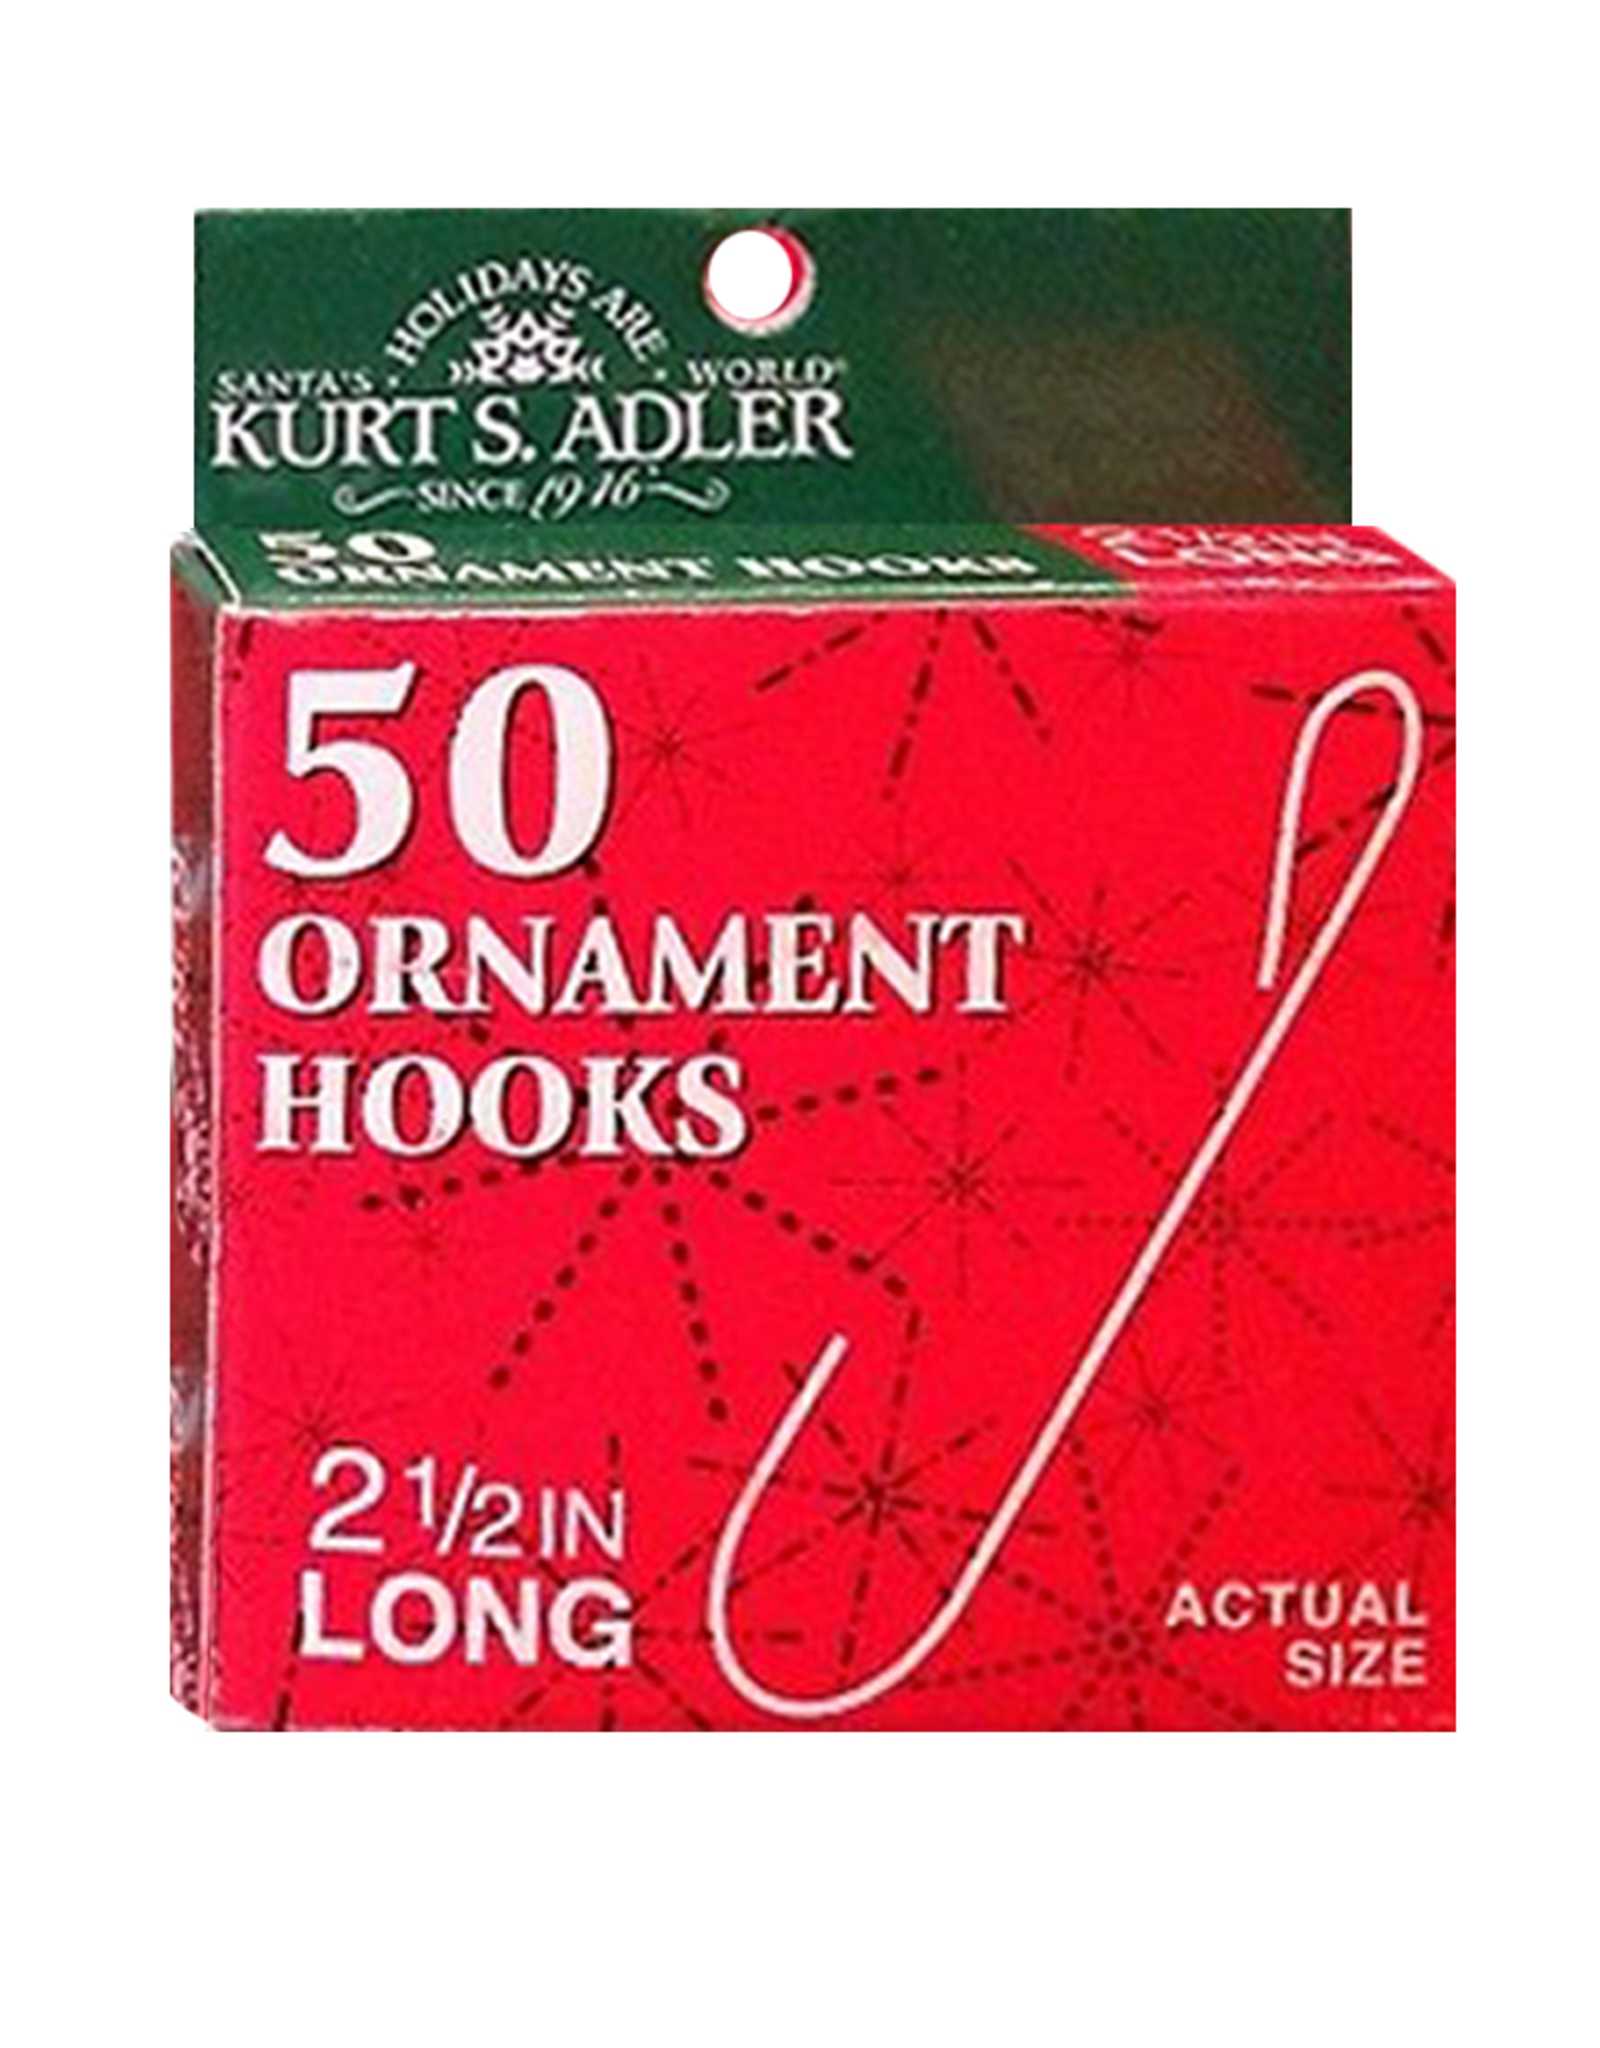 Kurt Adler Ornament Hooks 2.5 inch Pack of 50 Silver Wire Hooks Set